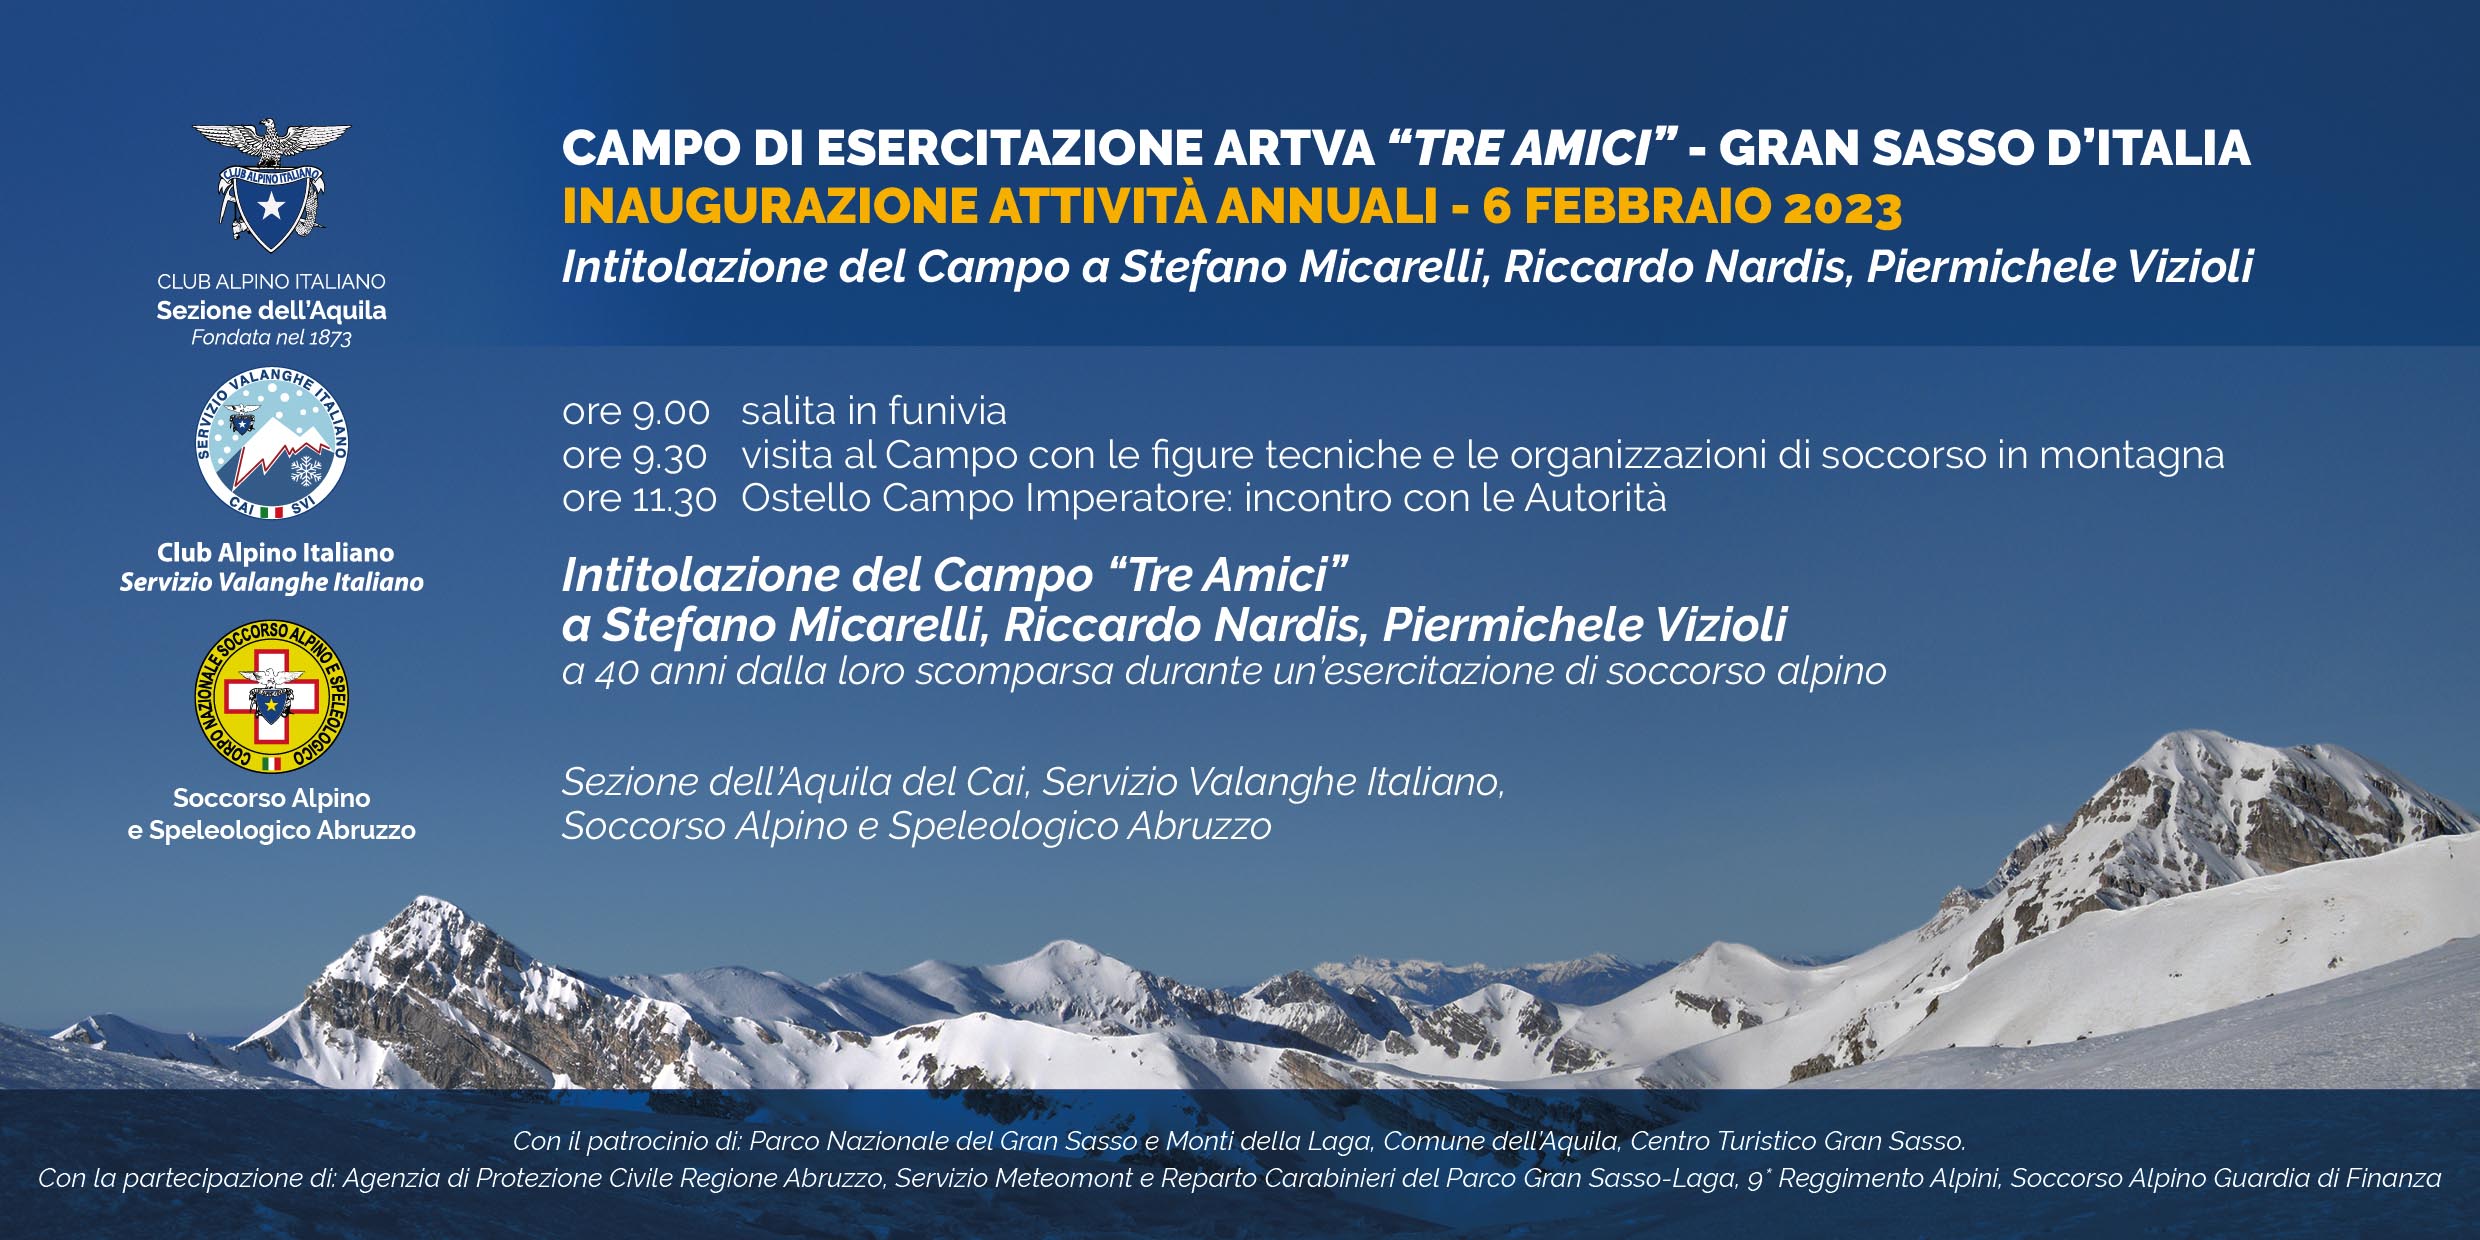 L’Aquila. La sezione CAI e il Soccorso Alpino organizzano giornata inaugurale attività 2023 a Campo Imperatore